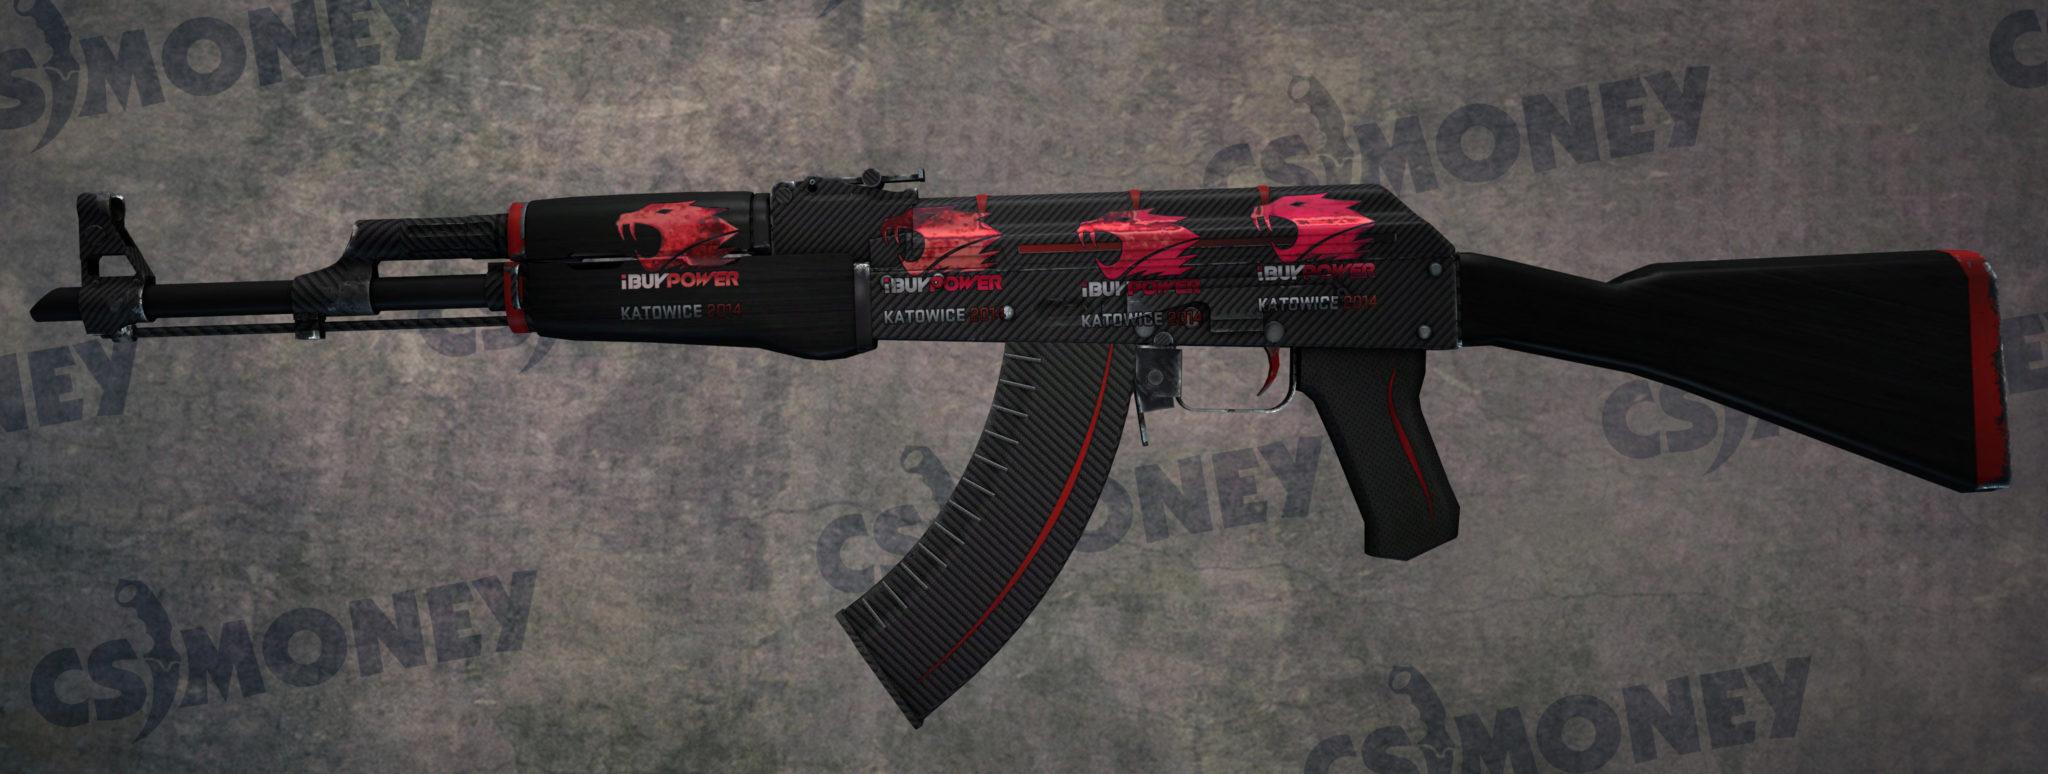 AK-47 Redline with four iBUYPOWER stickers.